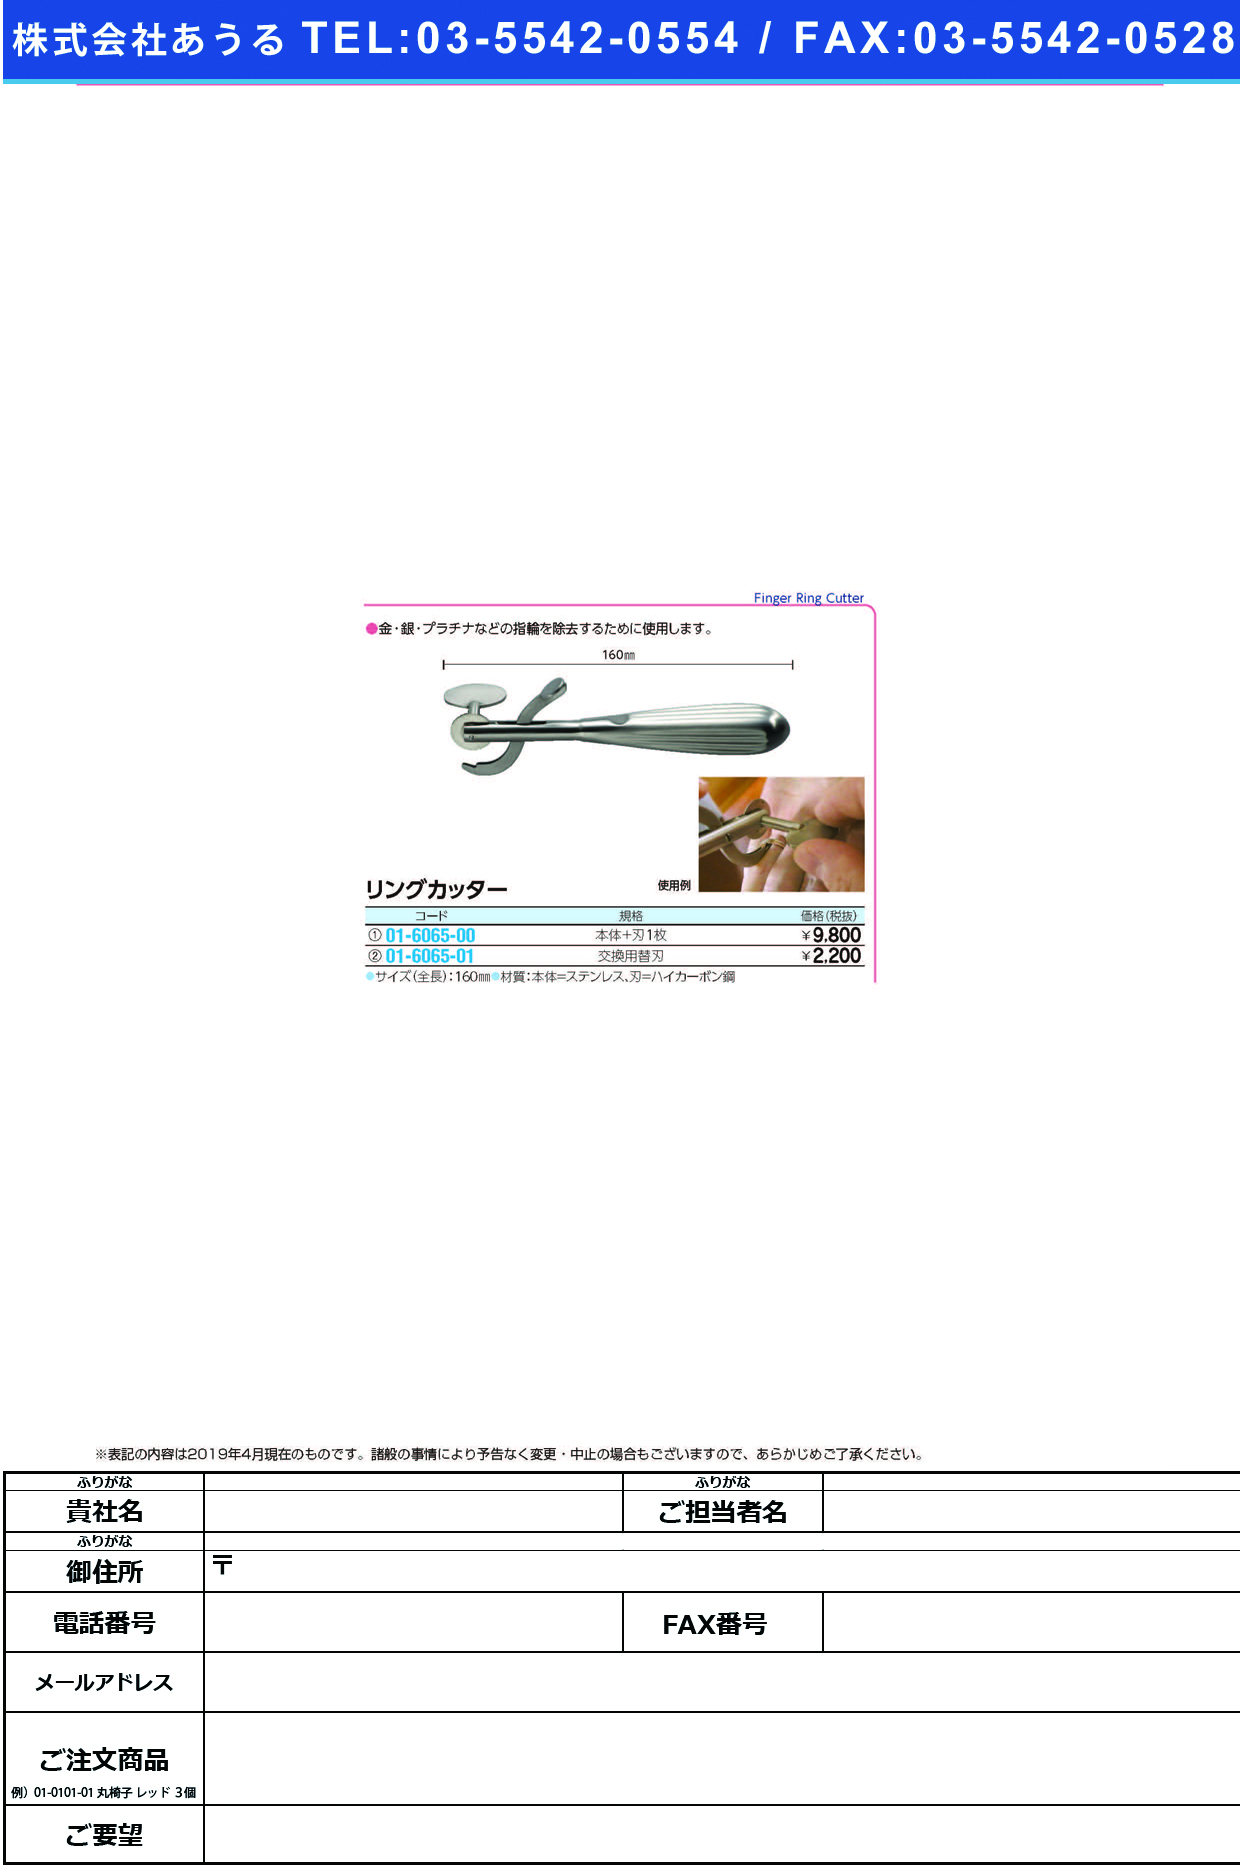 (01-6065-01)リングカッター用替刃（ハイカーボン鋼  ﾘﾝｸﾞｶｯﾀｰﾖｳｶｴﾊﾞ【1枚単位】【2019年カタログ商品】